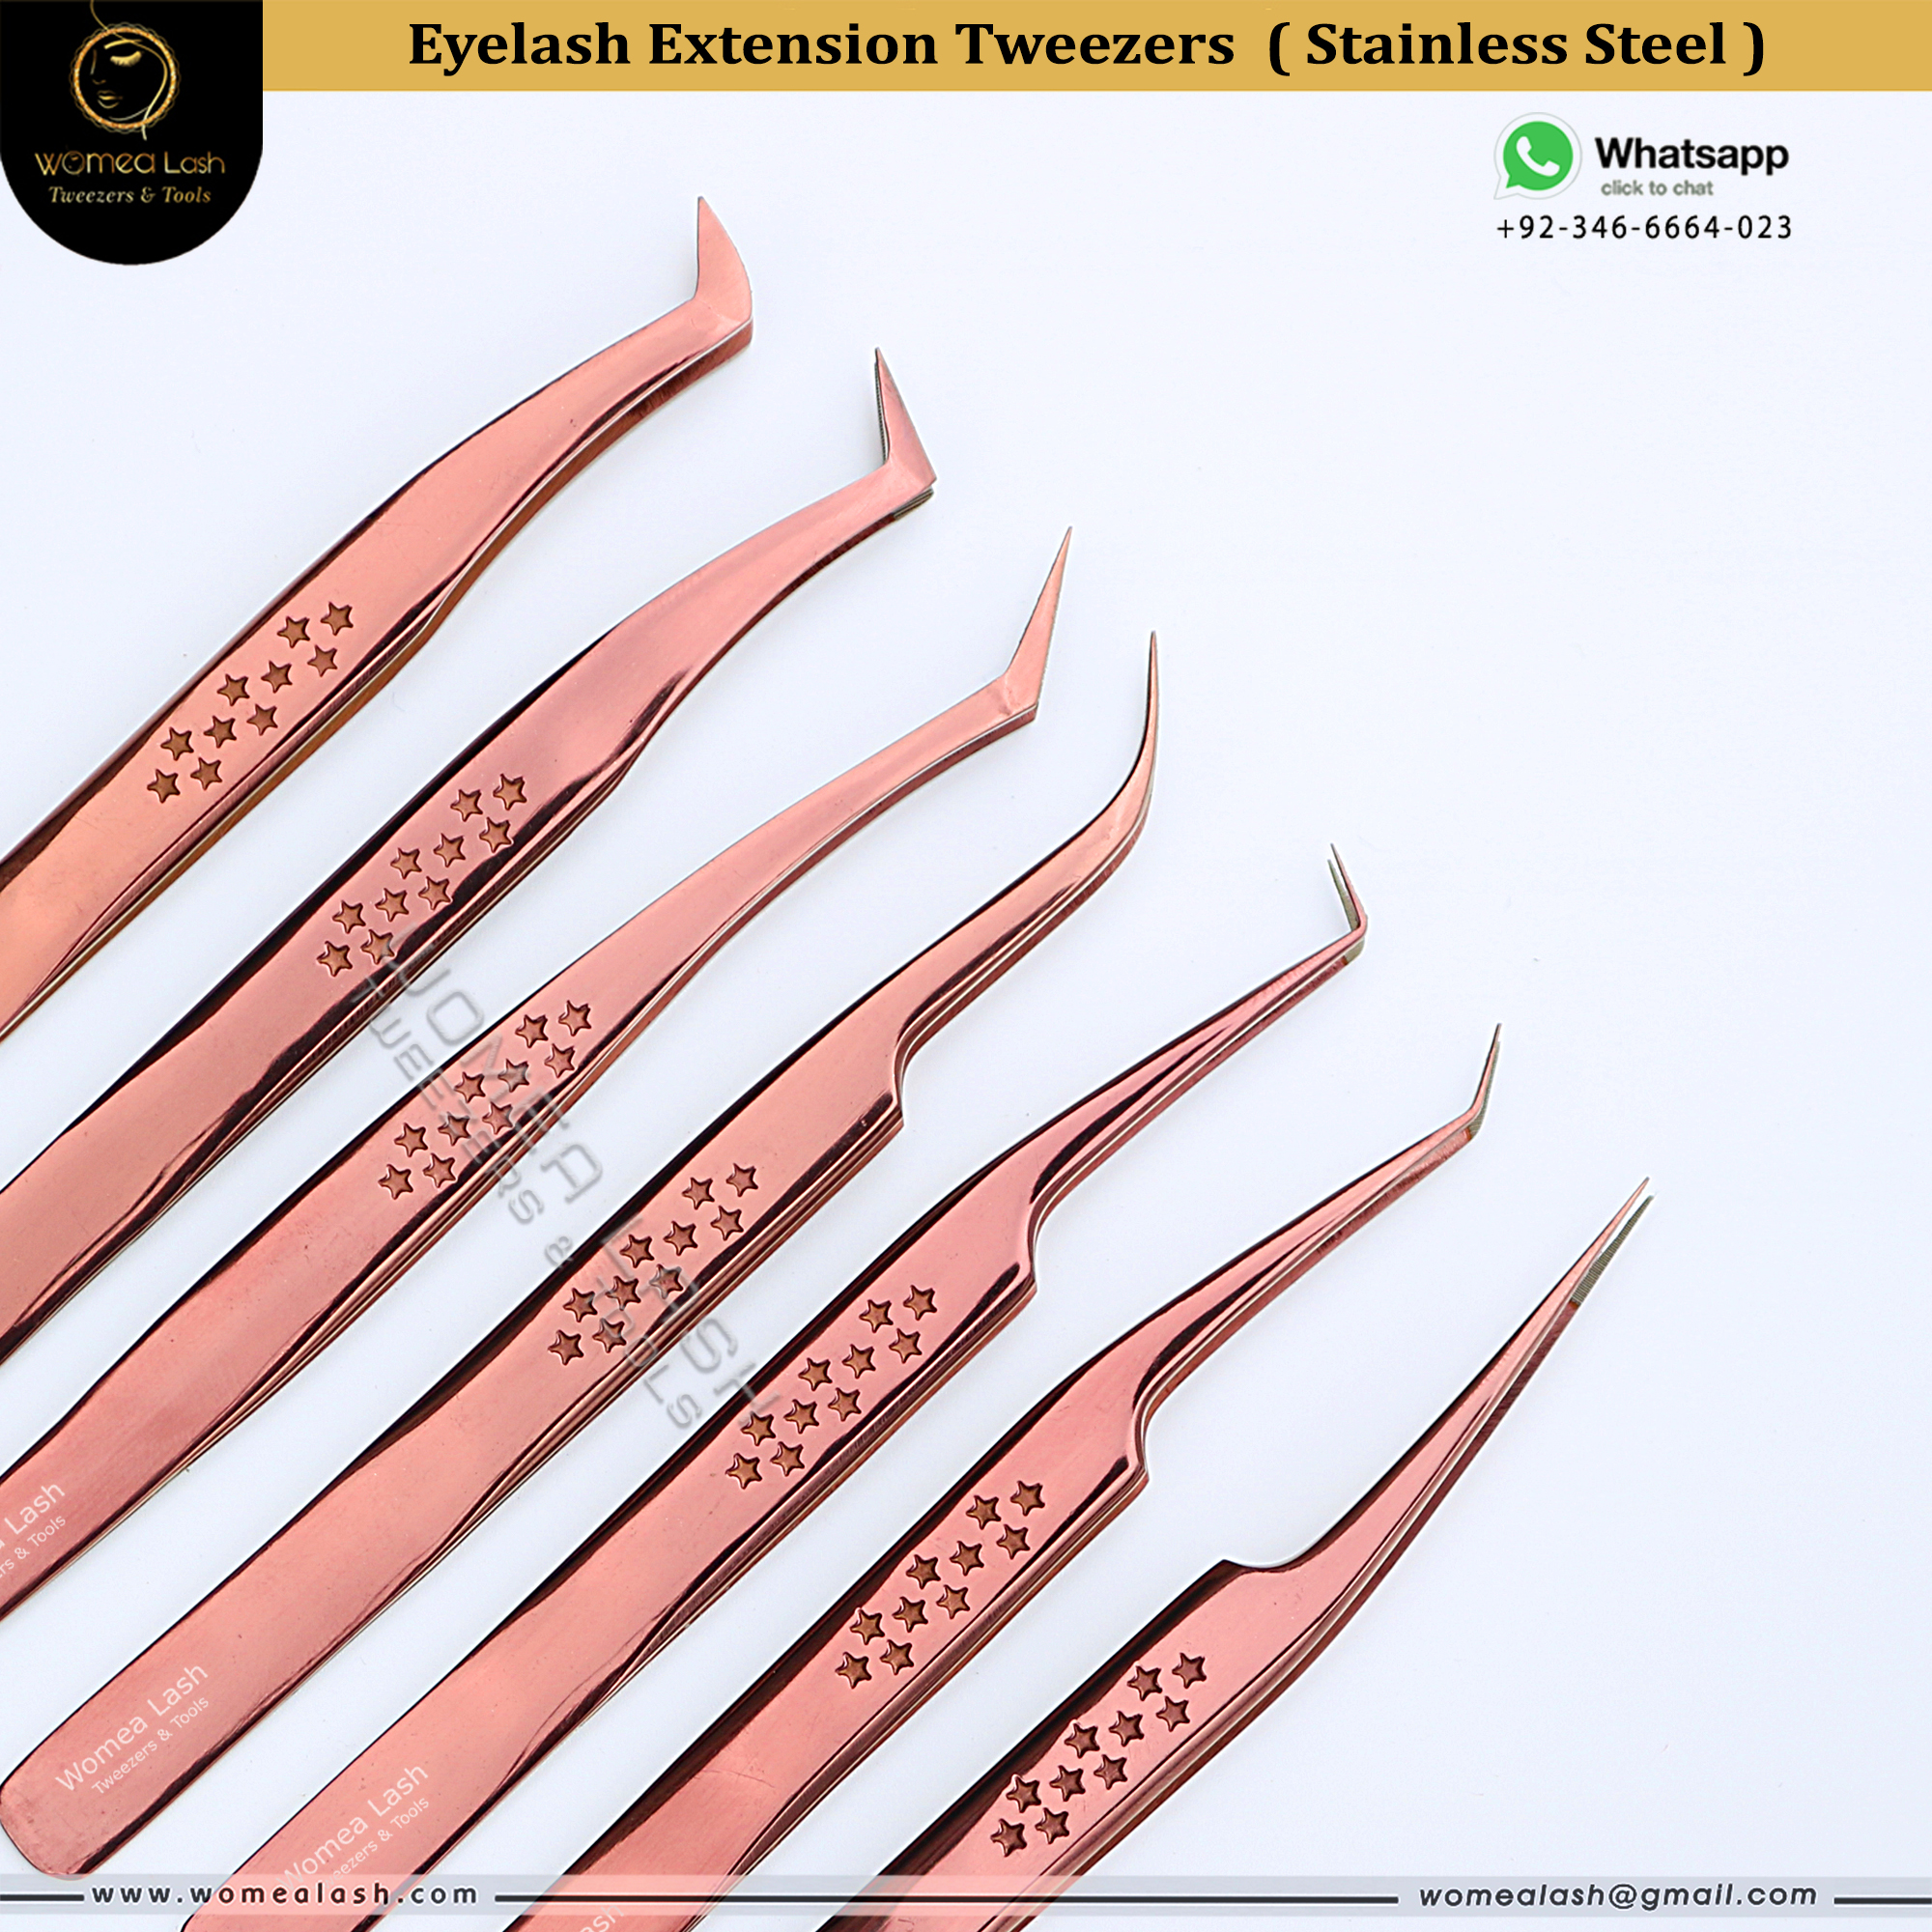 Eyelashes Extension Tweezers